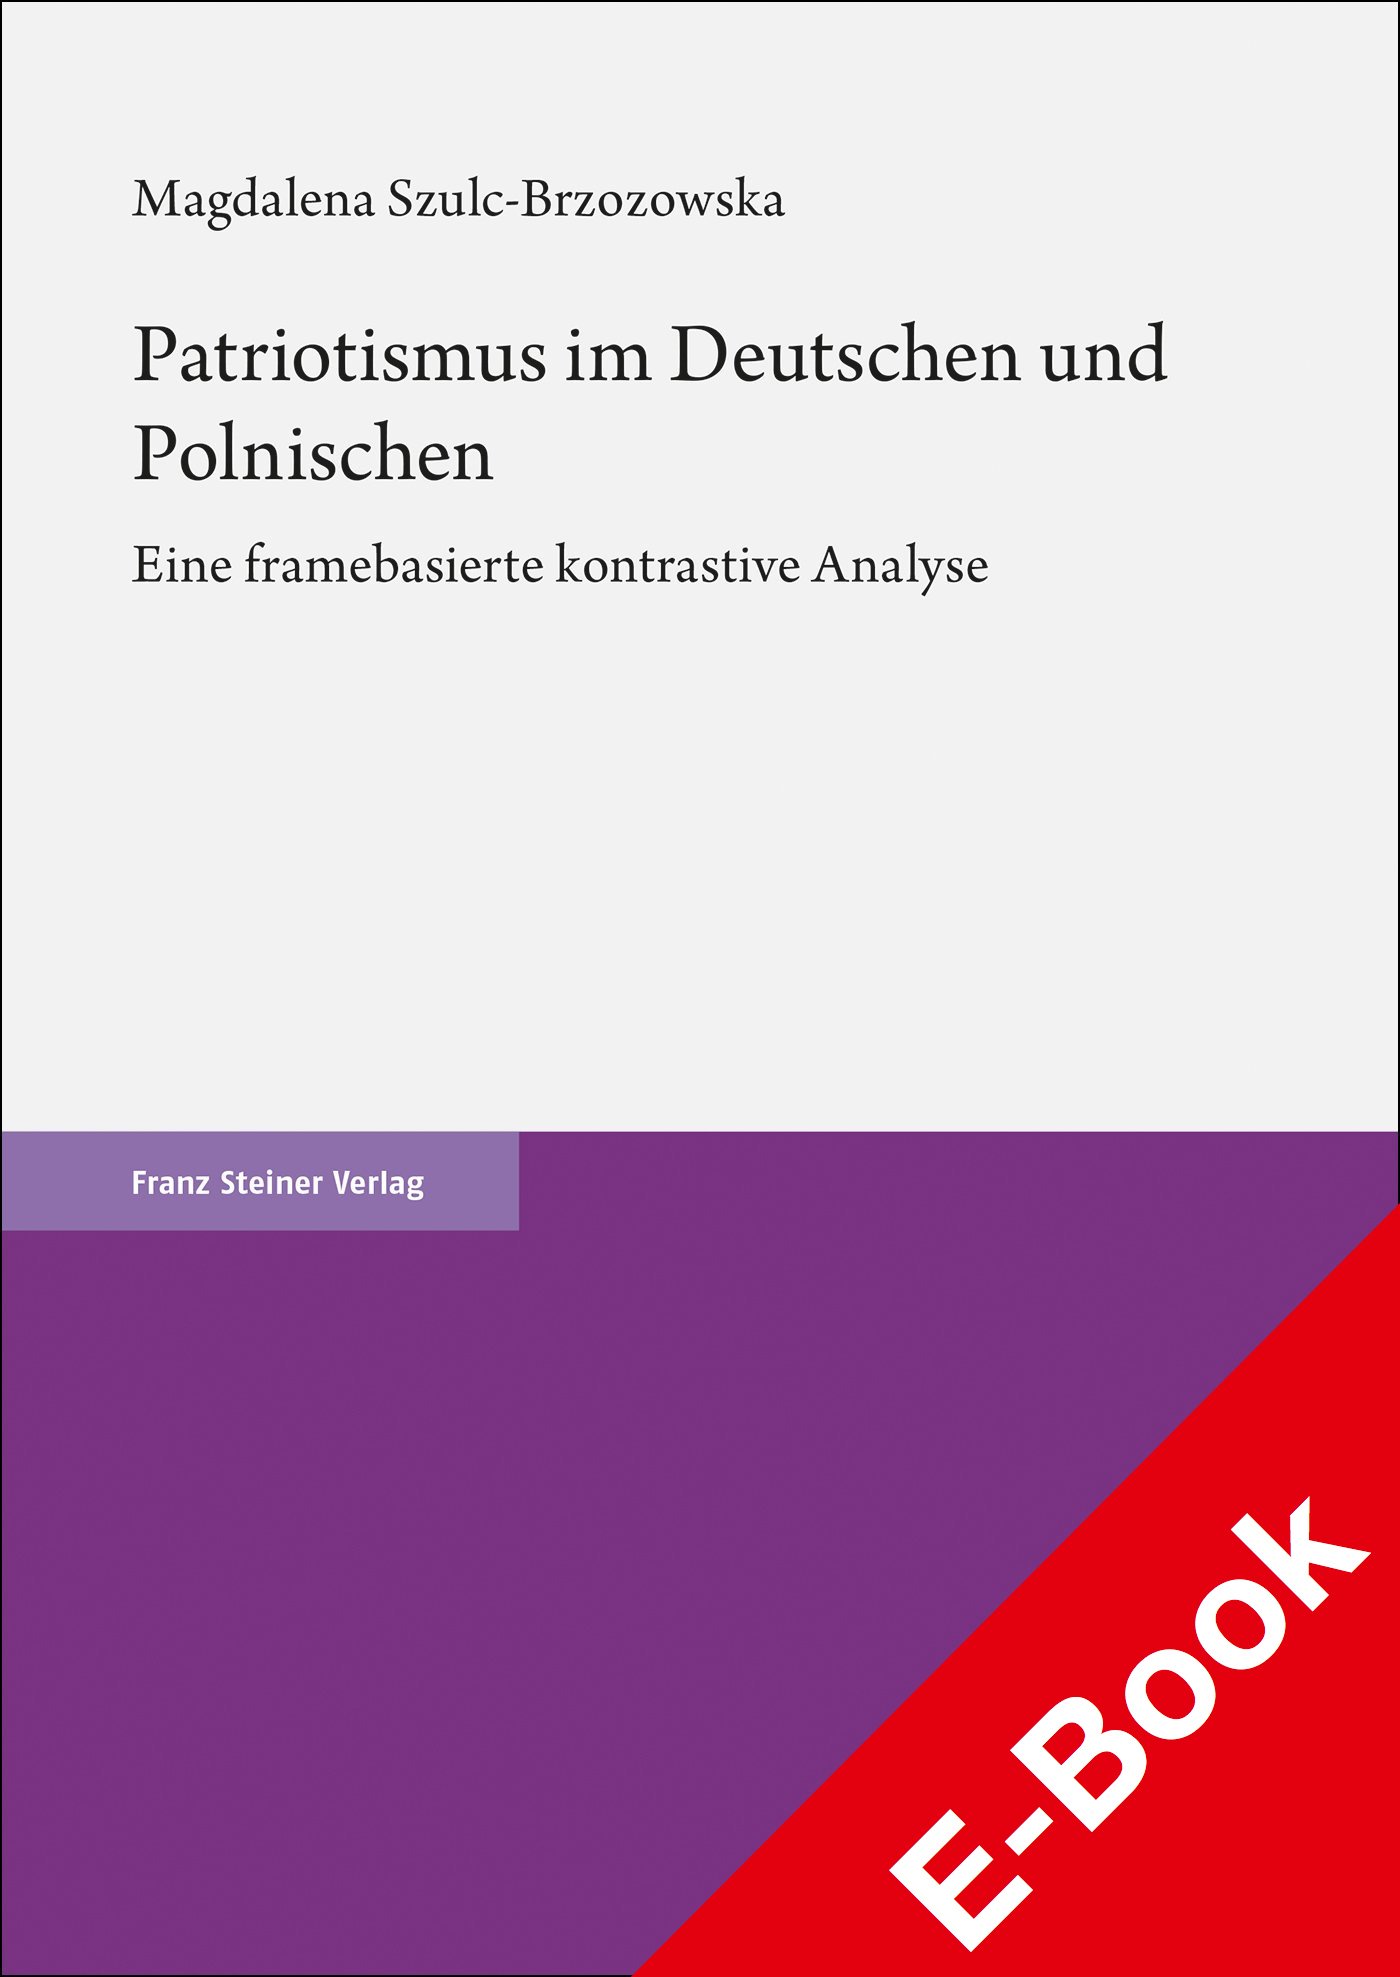 Patriotismus im Deutschen und Polnischen